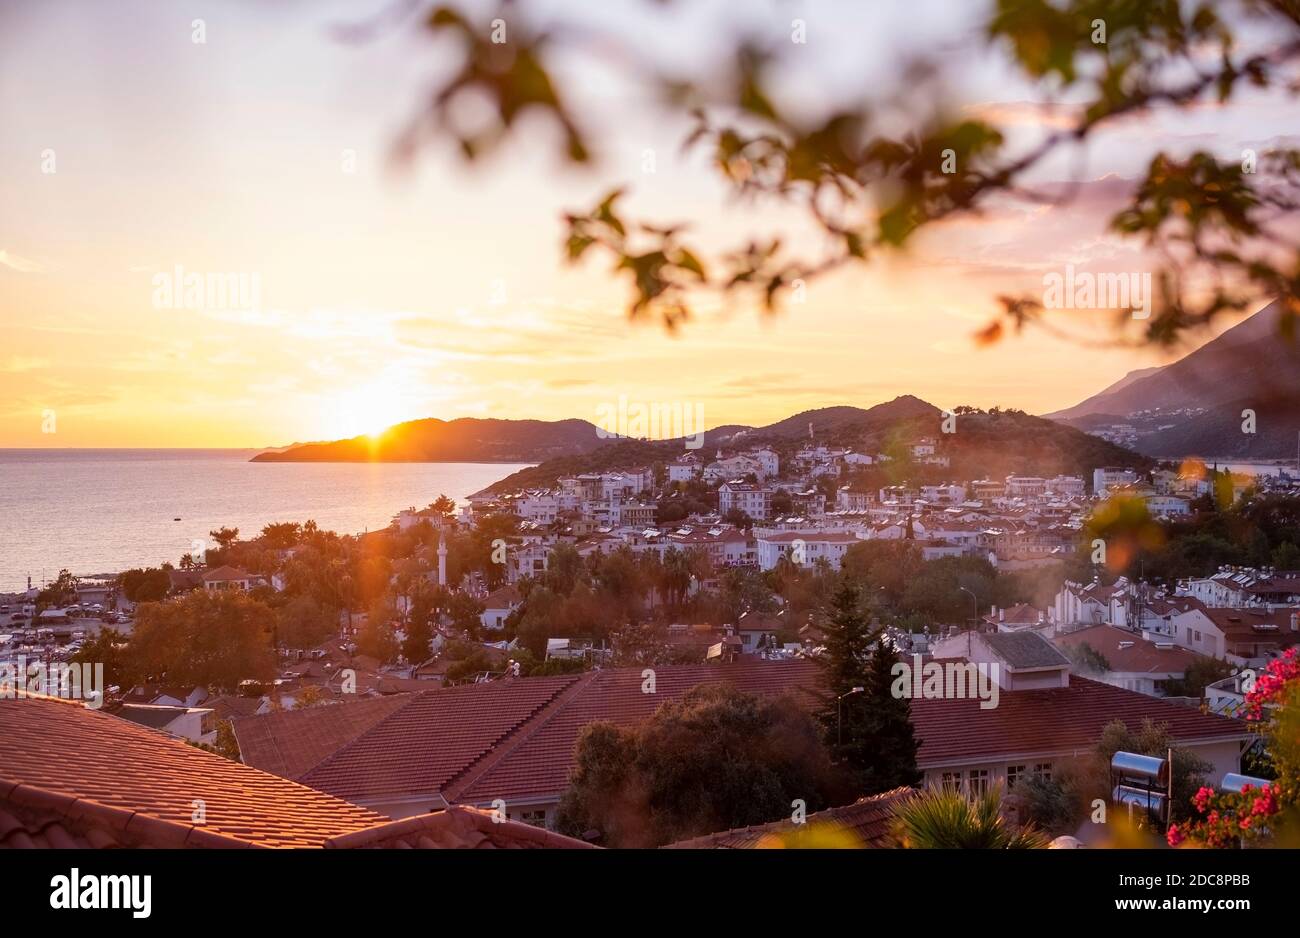 Beautiful sunset in Kas town on Mediterranean coast, Turkey Stock Photo